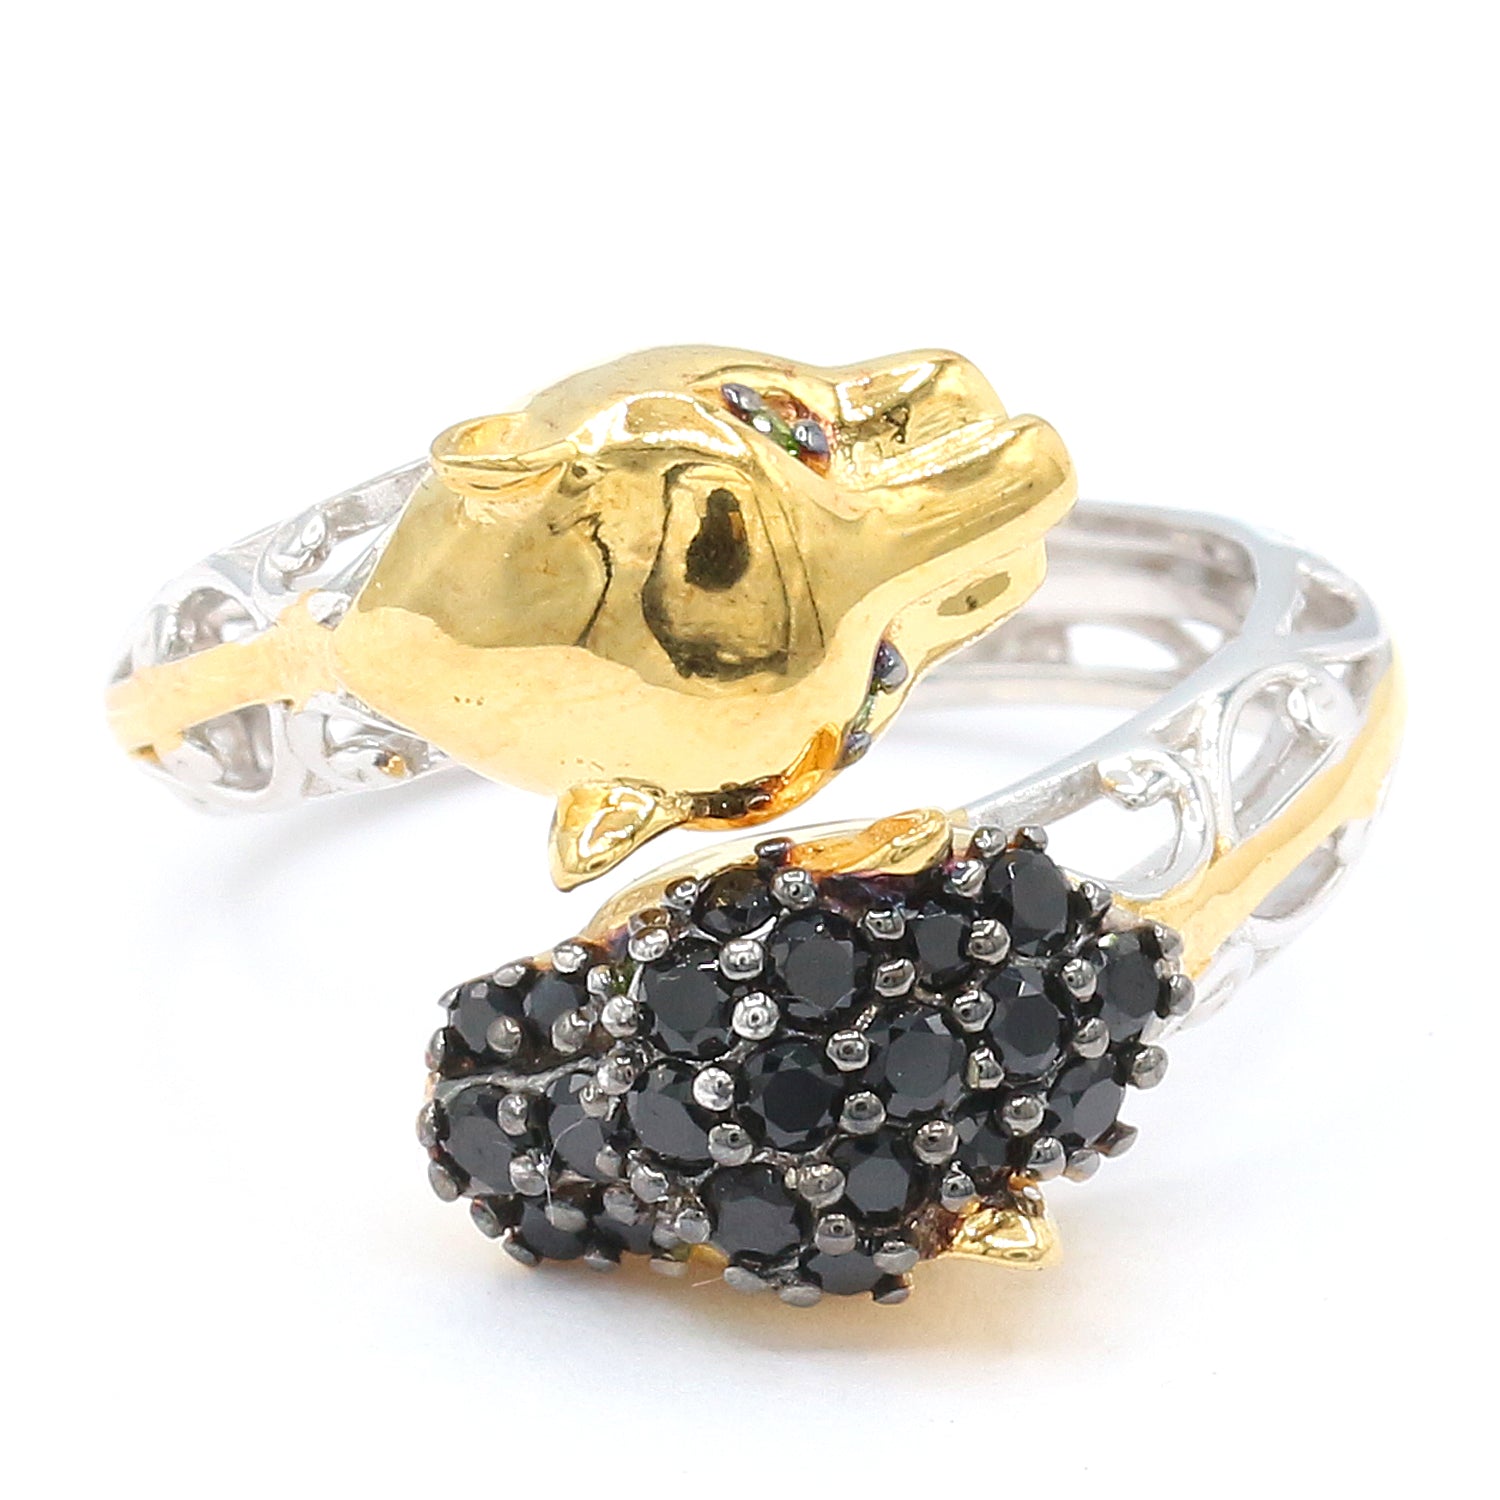 Gems en Vogue 1.01ctw Black Spinel & Chrome Diopside Panther Ring